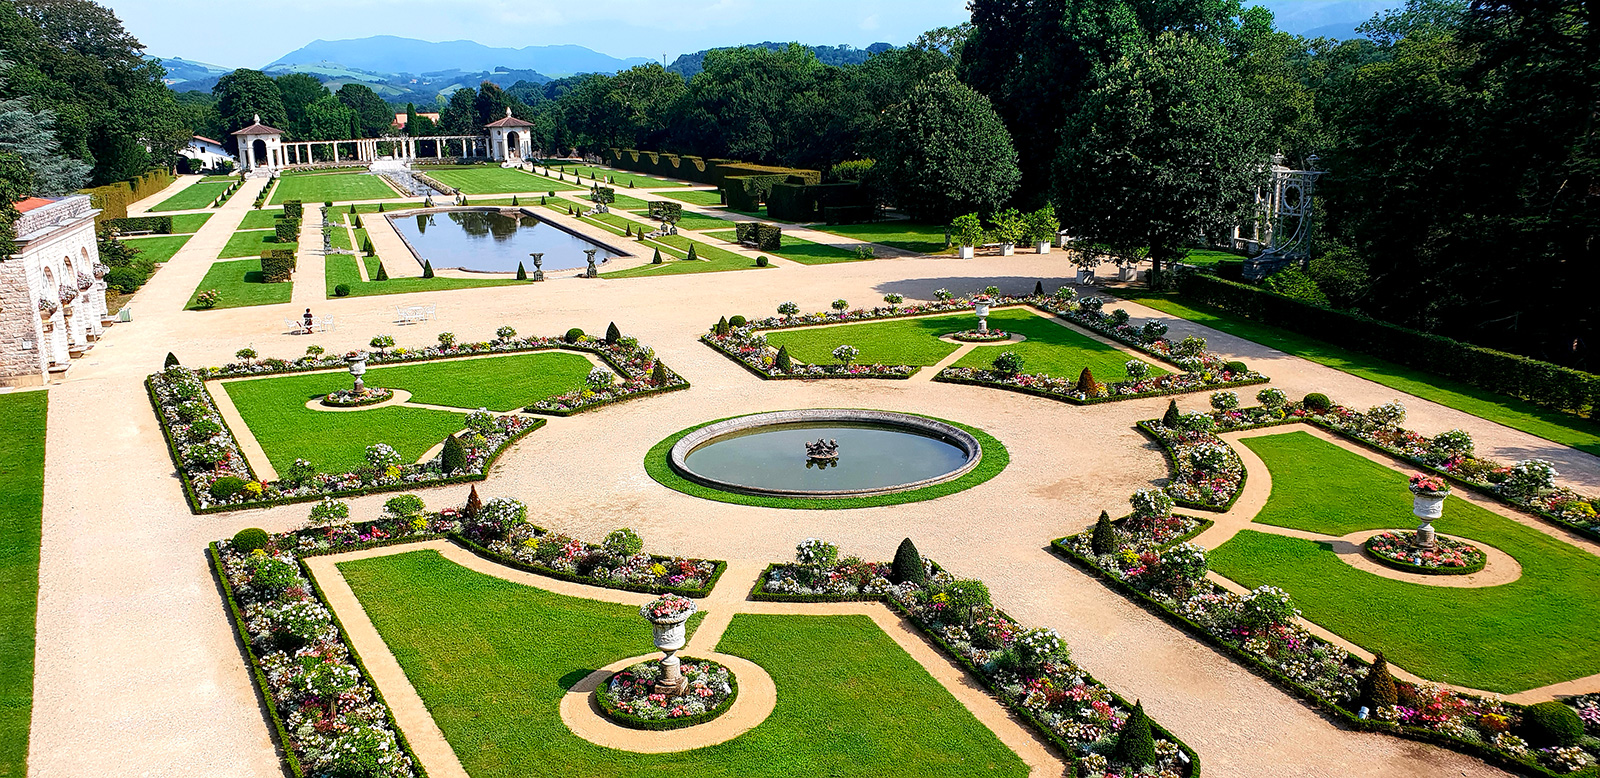 The gardens of Villa Arnaga